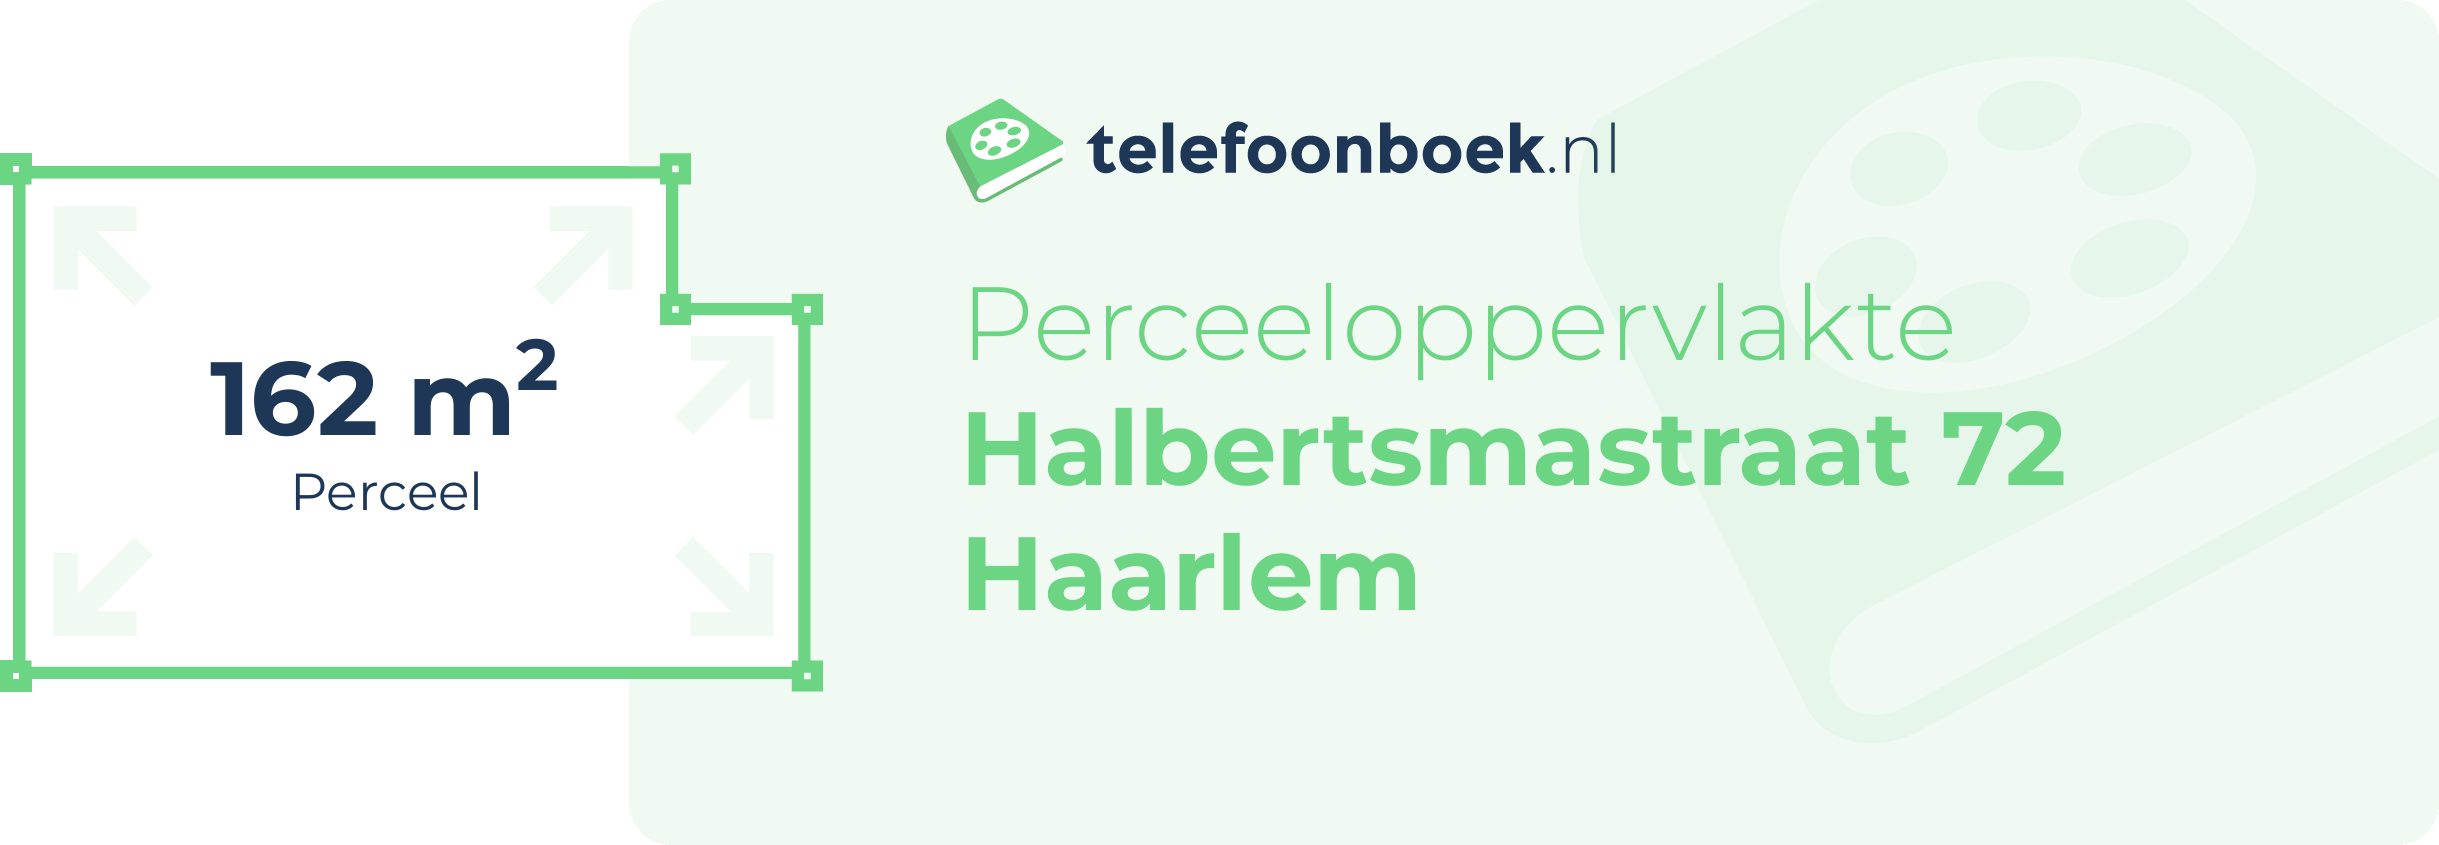 Perceeloppervlakte Halbertsmastraat 72 Haarlem